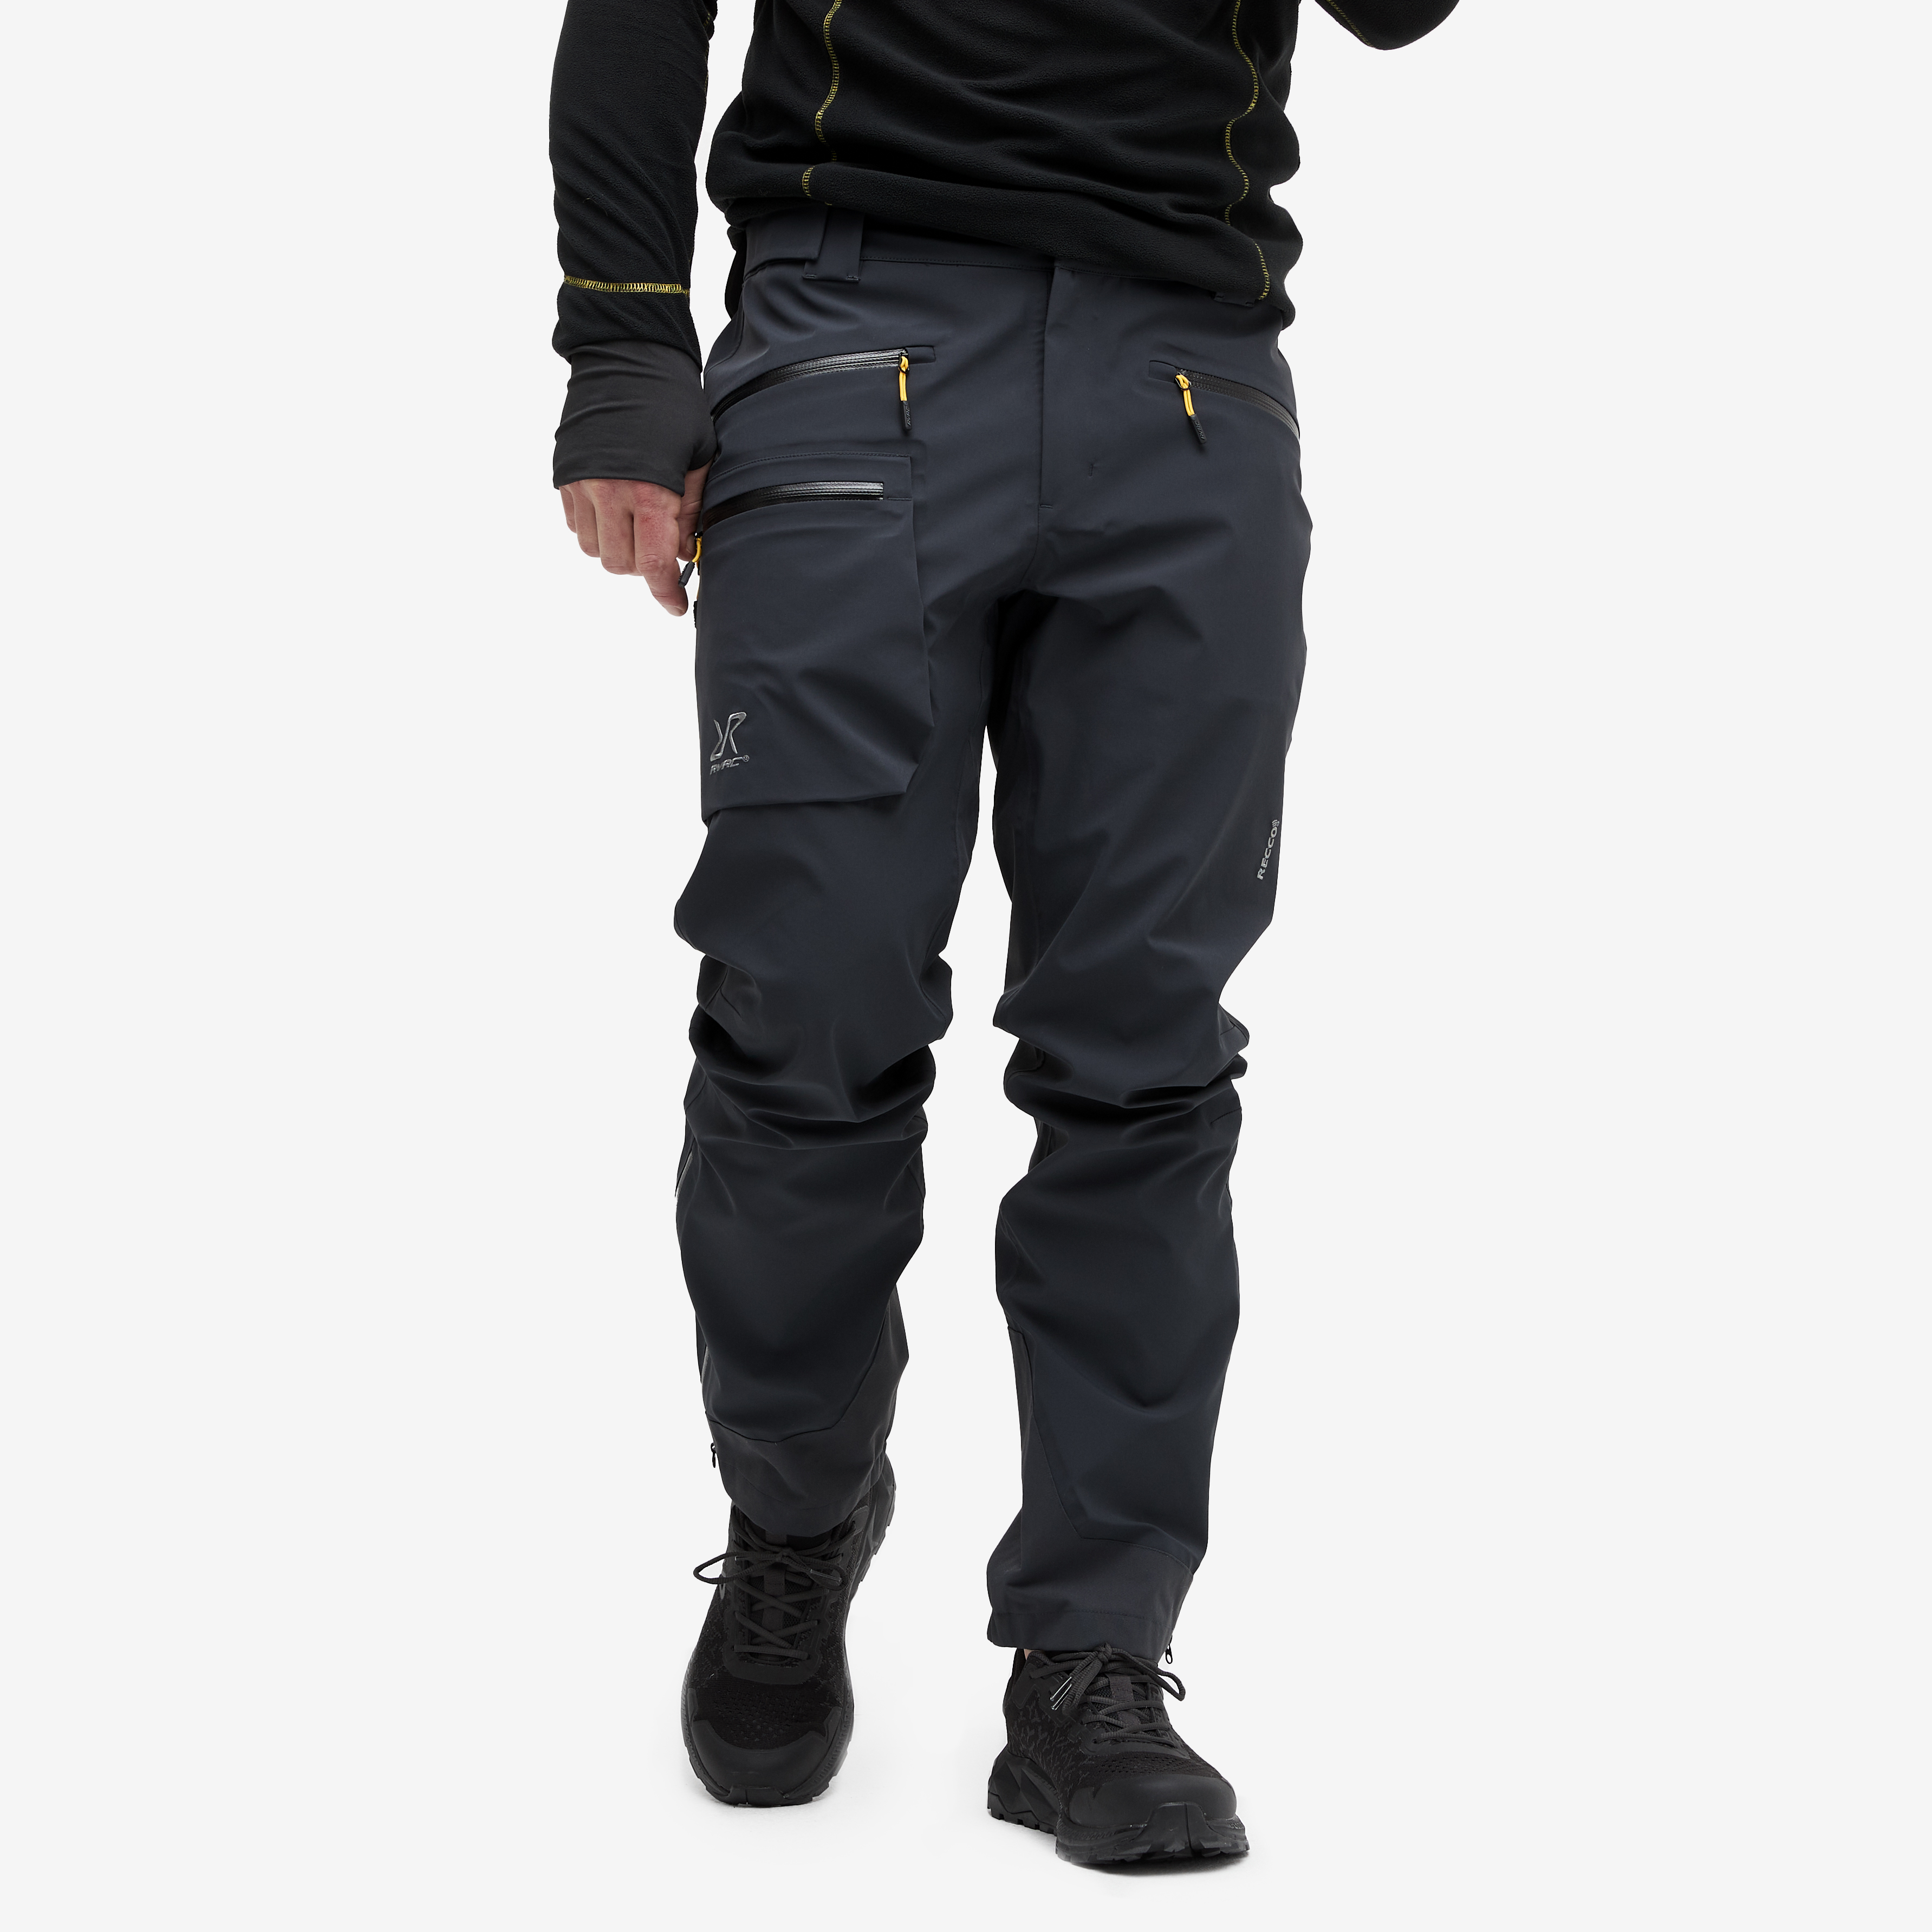 Aphex Pro Pants Herre Charcoal Black, Størrelse:XL - Outdoorbukse, Vandrebukse & Trekkingbukse